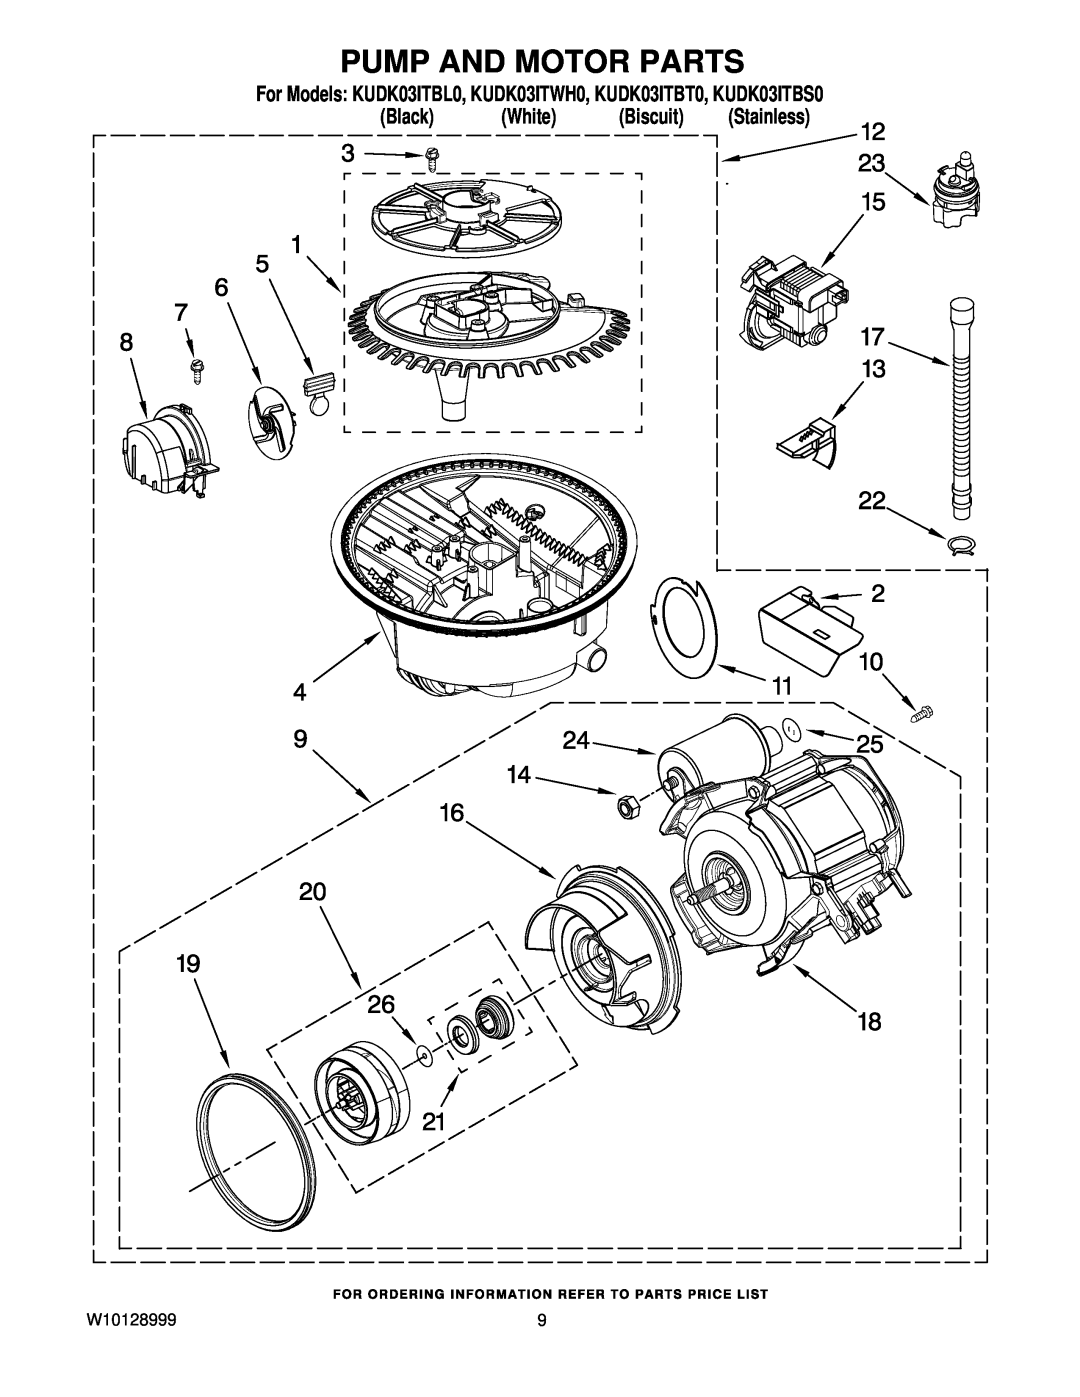 KitchenAid manual Pump And Motor Parts, For Models KUDK03ITBL0, KUDK03ITWH0, KUDK03ITBT0, KUDK03ITBS0 